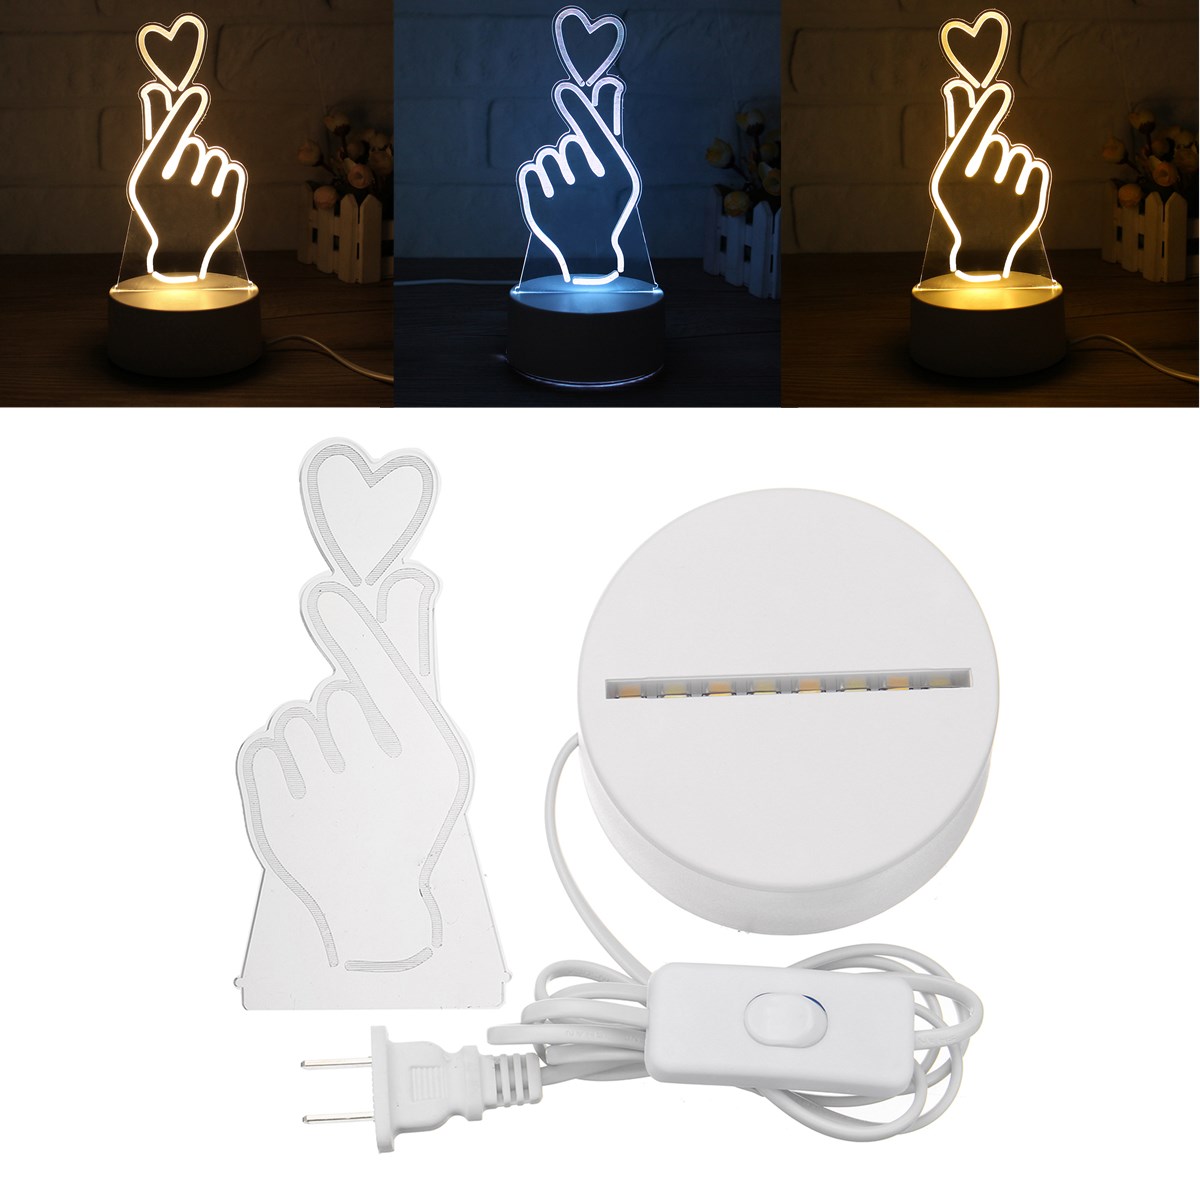 

3D Любовь Сердце Жест LED Ночник свет Таблица Лампа Кнопка переключатель Room Decor подарок